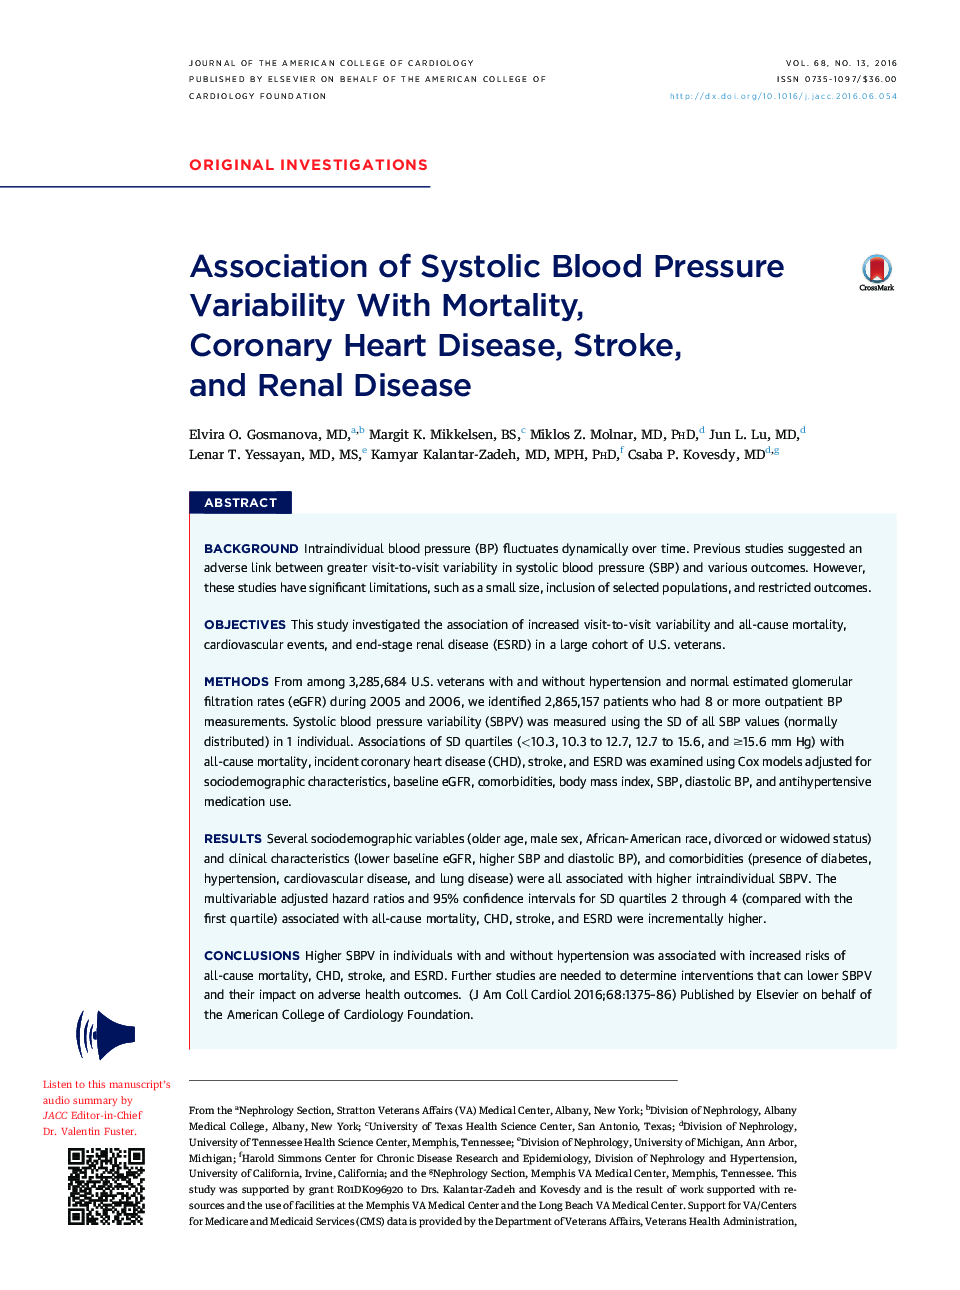 انجمن تغییرات فشار خون سیستولیک با مرگ و میر، بیماری عروق کرونر، سکته مغزی، و بیماری ریوی 